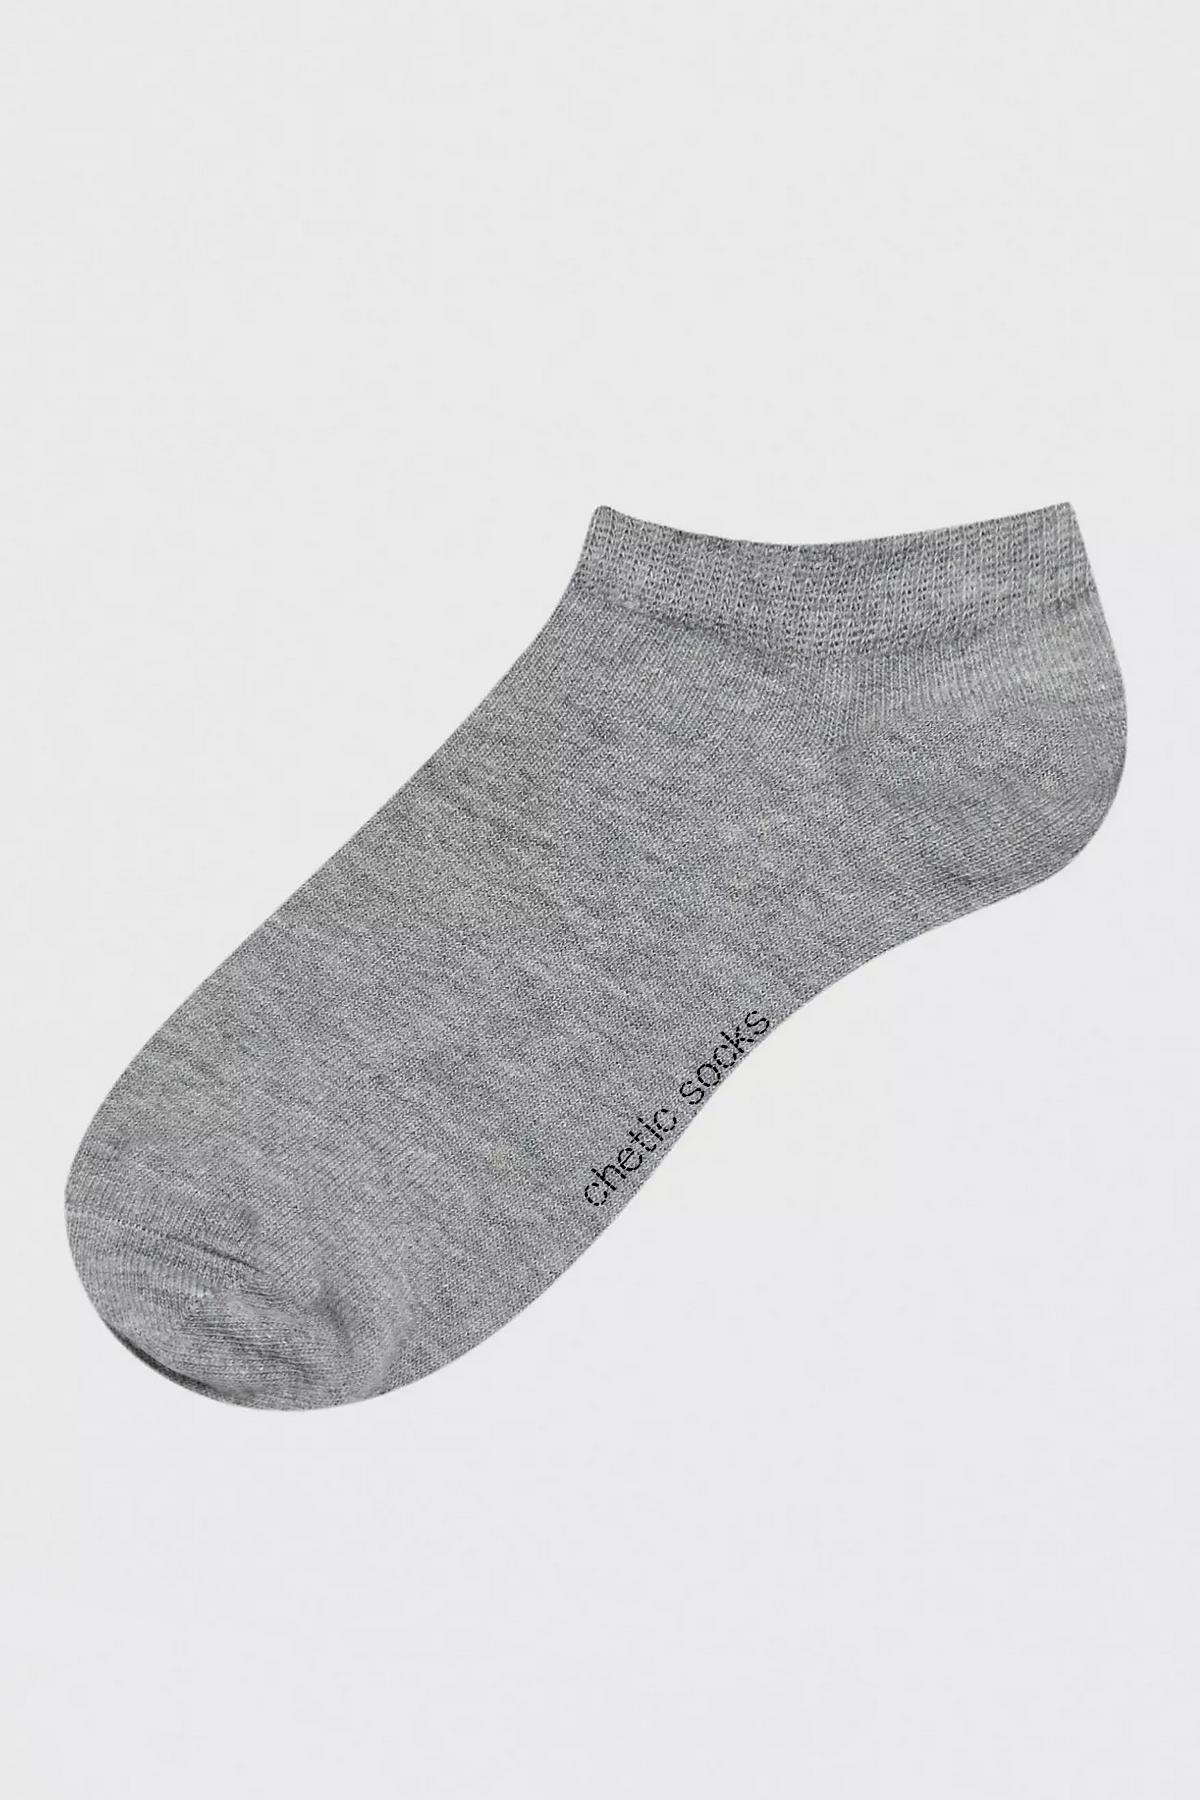 Siyah Beyaz Gri Dikişsiz Pamuklu 3'lü Kadın Patik Çorap Seti | chetic.com.tr